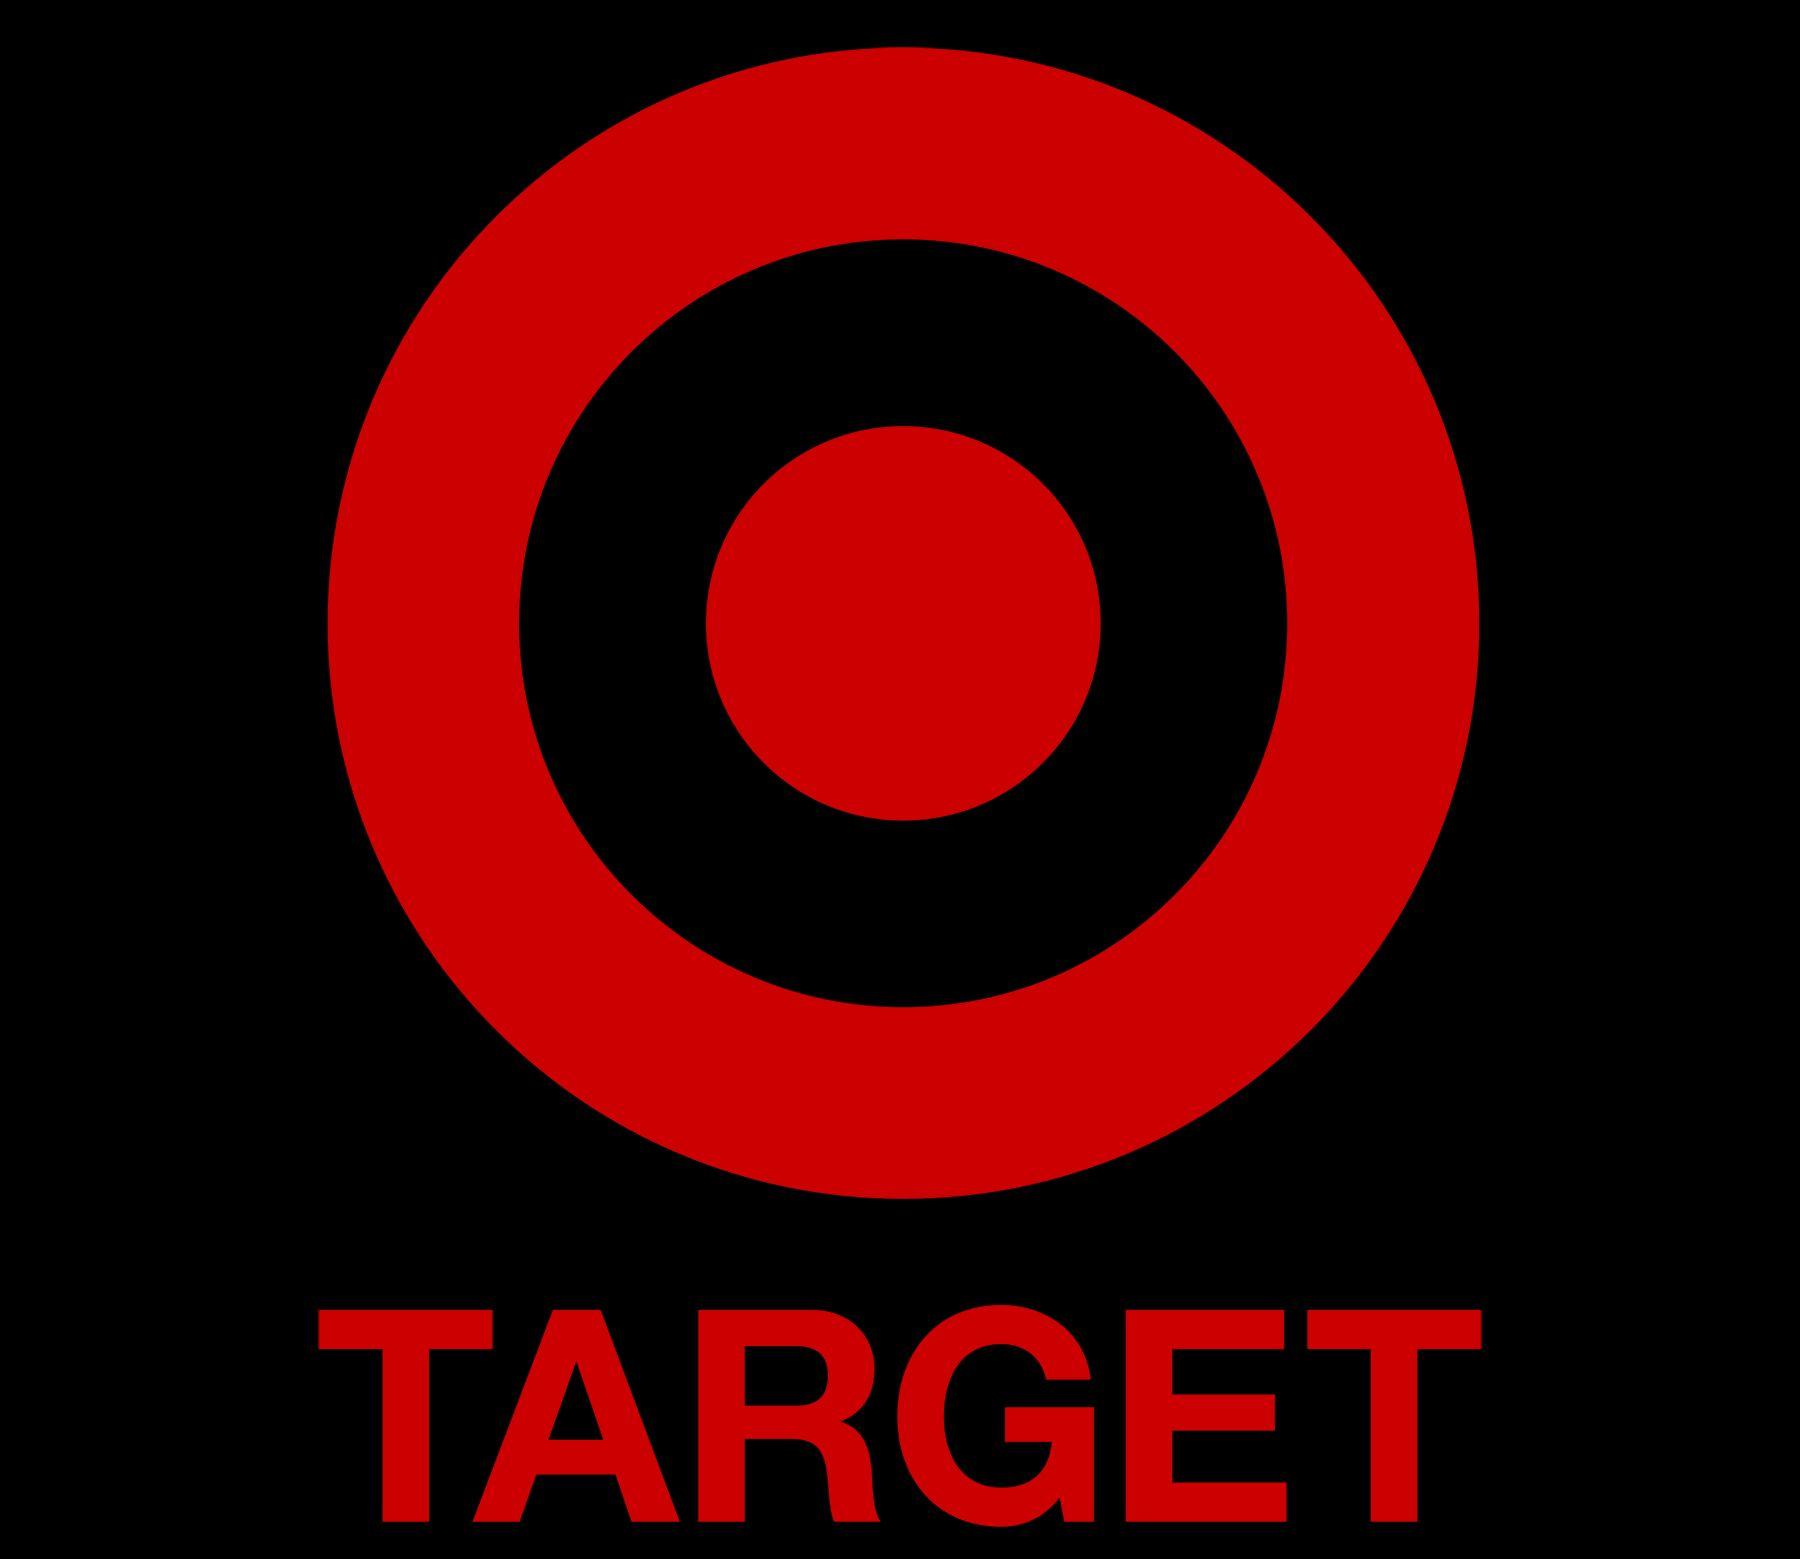 Traget Logo - Target Logo, Target Symbol, Meaning, History and Evolution